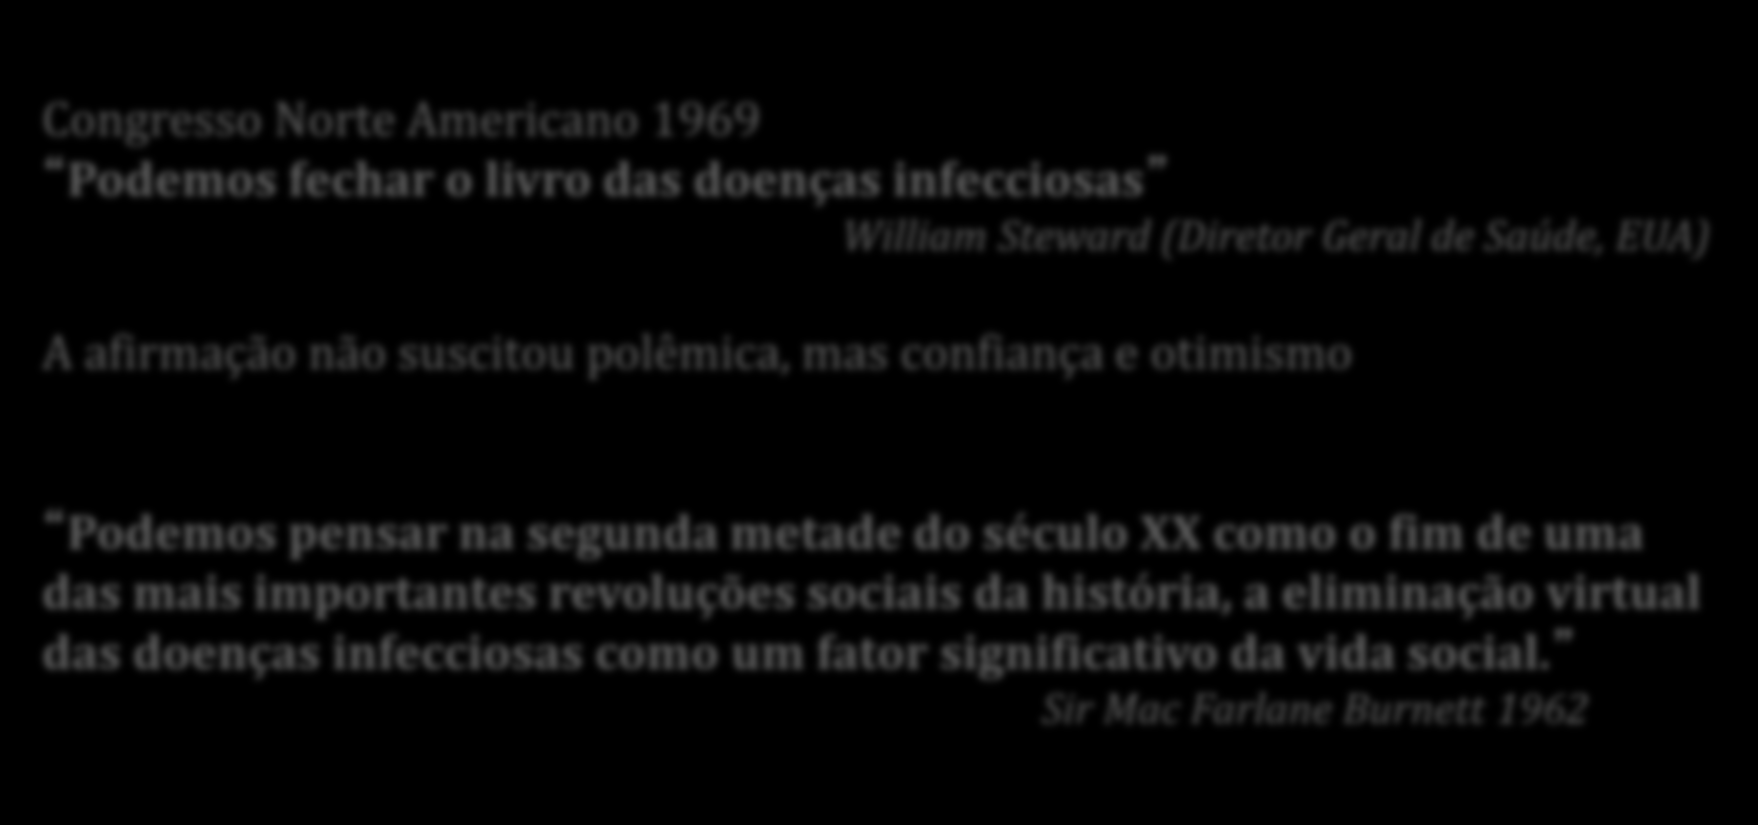 O fim das doenças infecciosas no mundo desenvolvido Congresso Norte Americano 1969 Podemos fechar o livro das doenças infecciosas William Steward (Diretor Geral de Saúde, EUA) A afirmação não